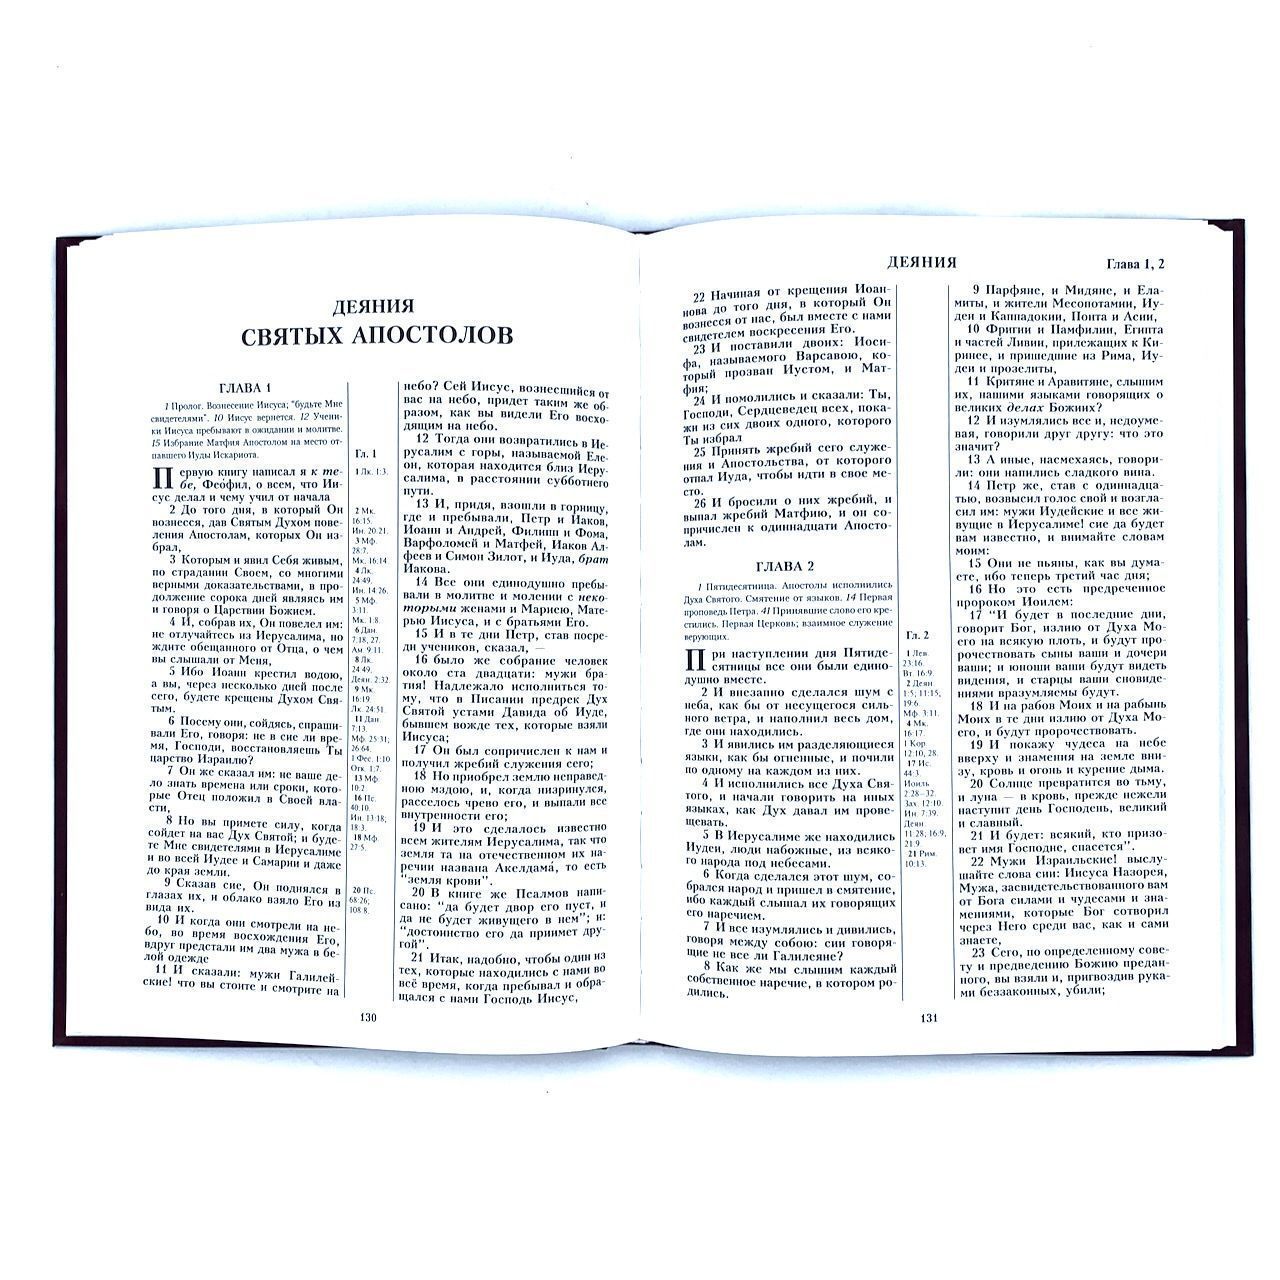 Новый Завет, большой формат, твердый переплет, цвет бордо, очень крупный шрифт 16-18 кегель, размер 210*300 мм, паралельные места по центру страницы